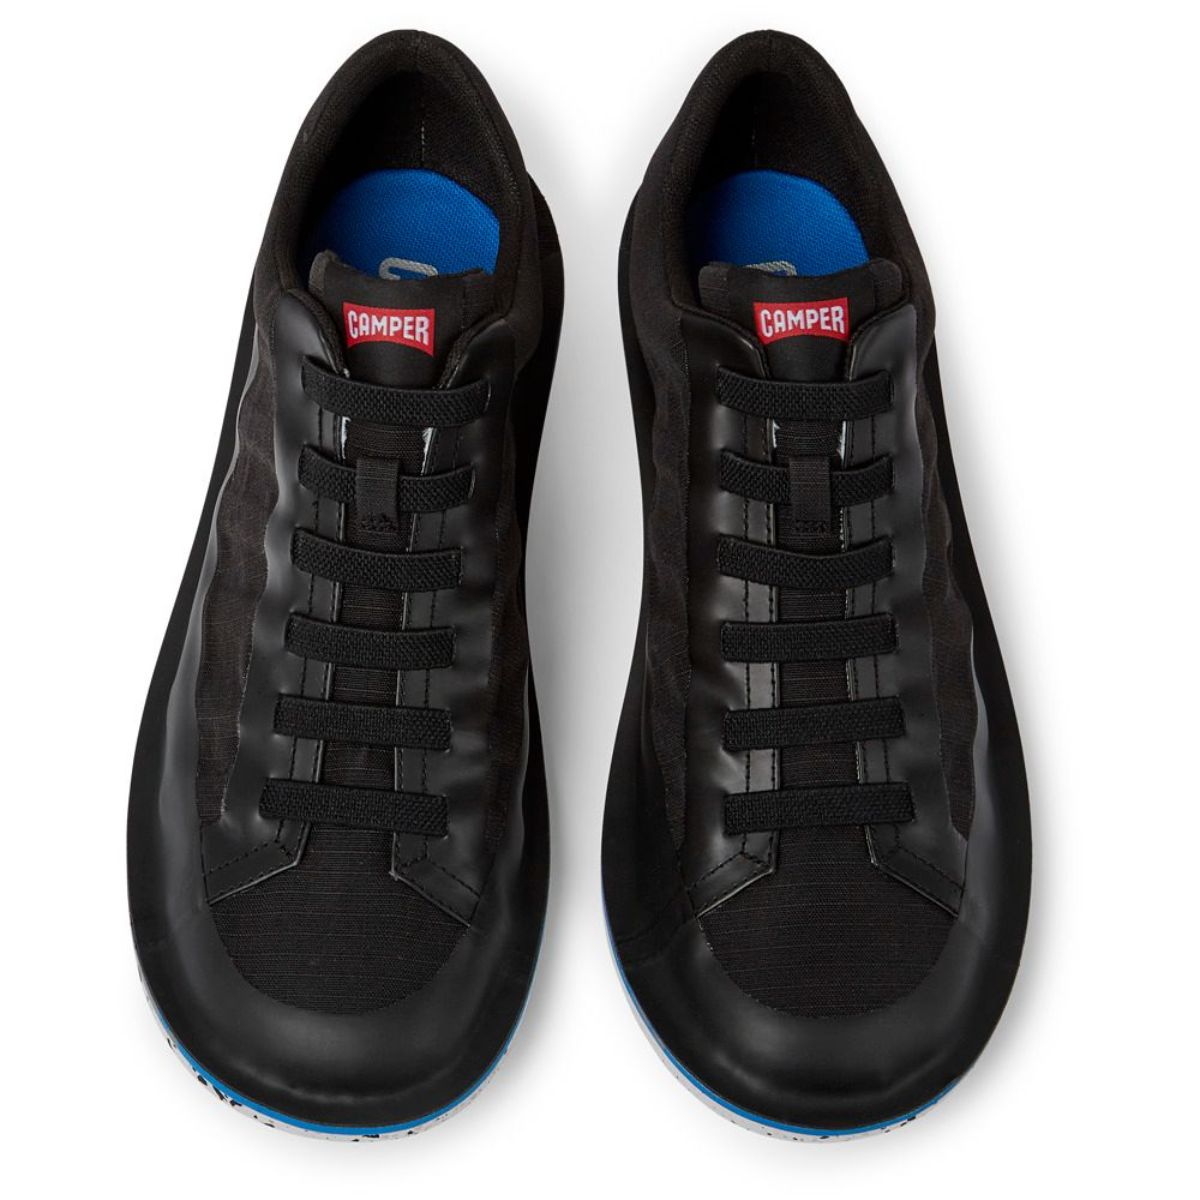 נעלי גברים קמפר Camper Beetle Black shoe for men